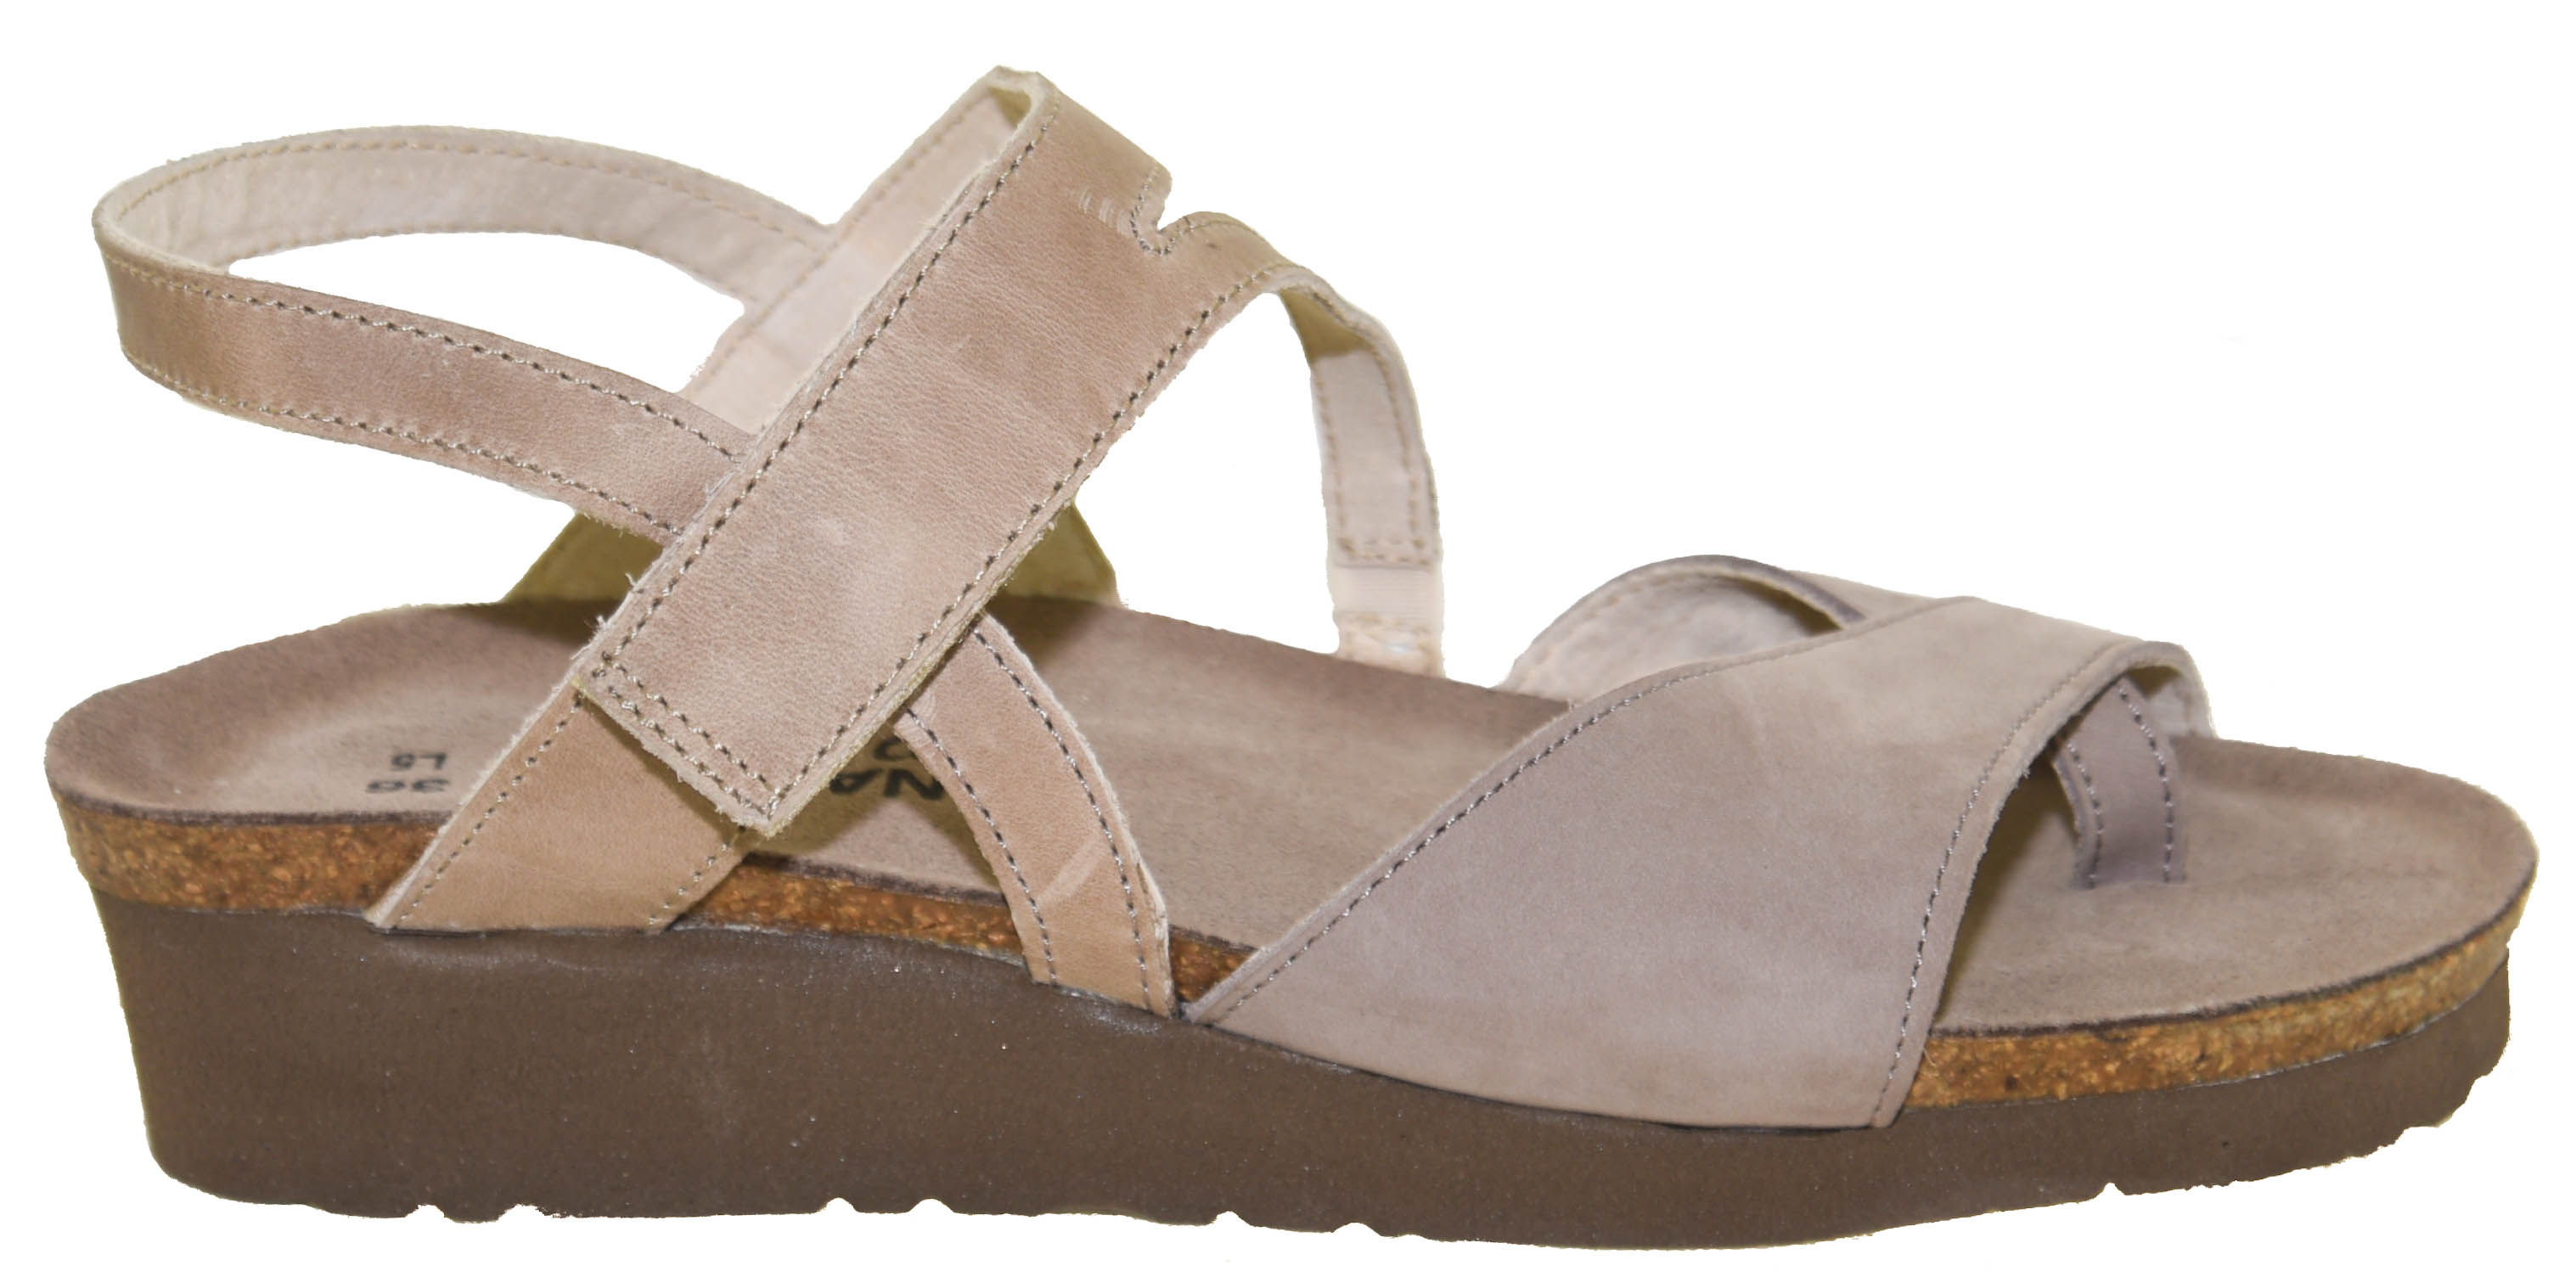 Naot Women's Blaire Backstrap Sandal Style 4028 W5H | eBay